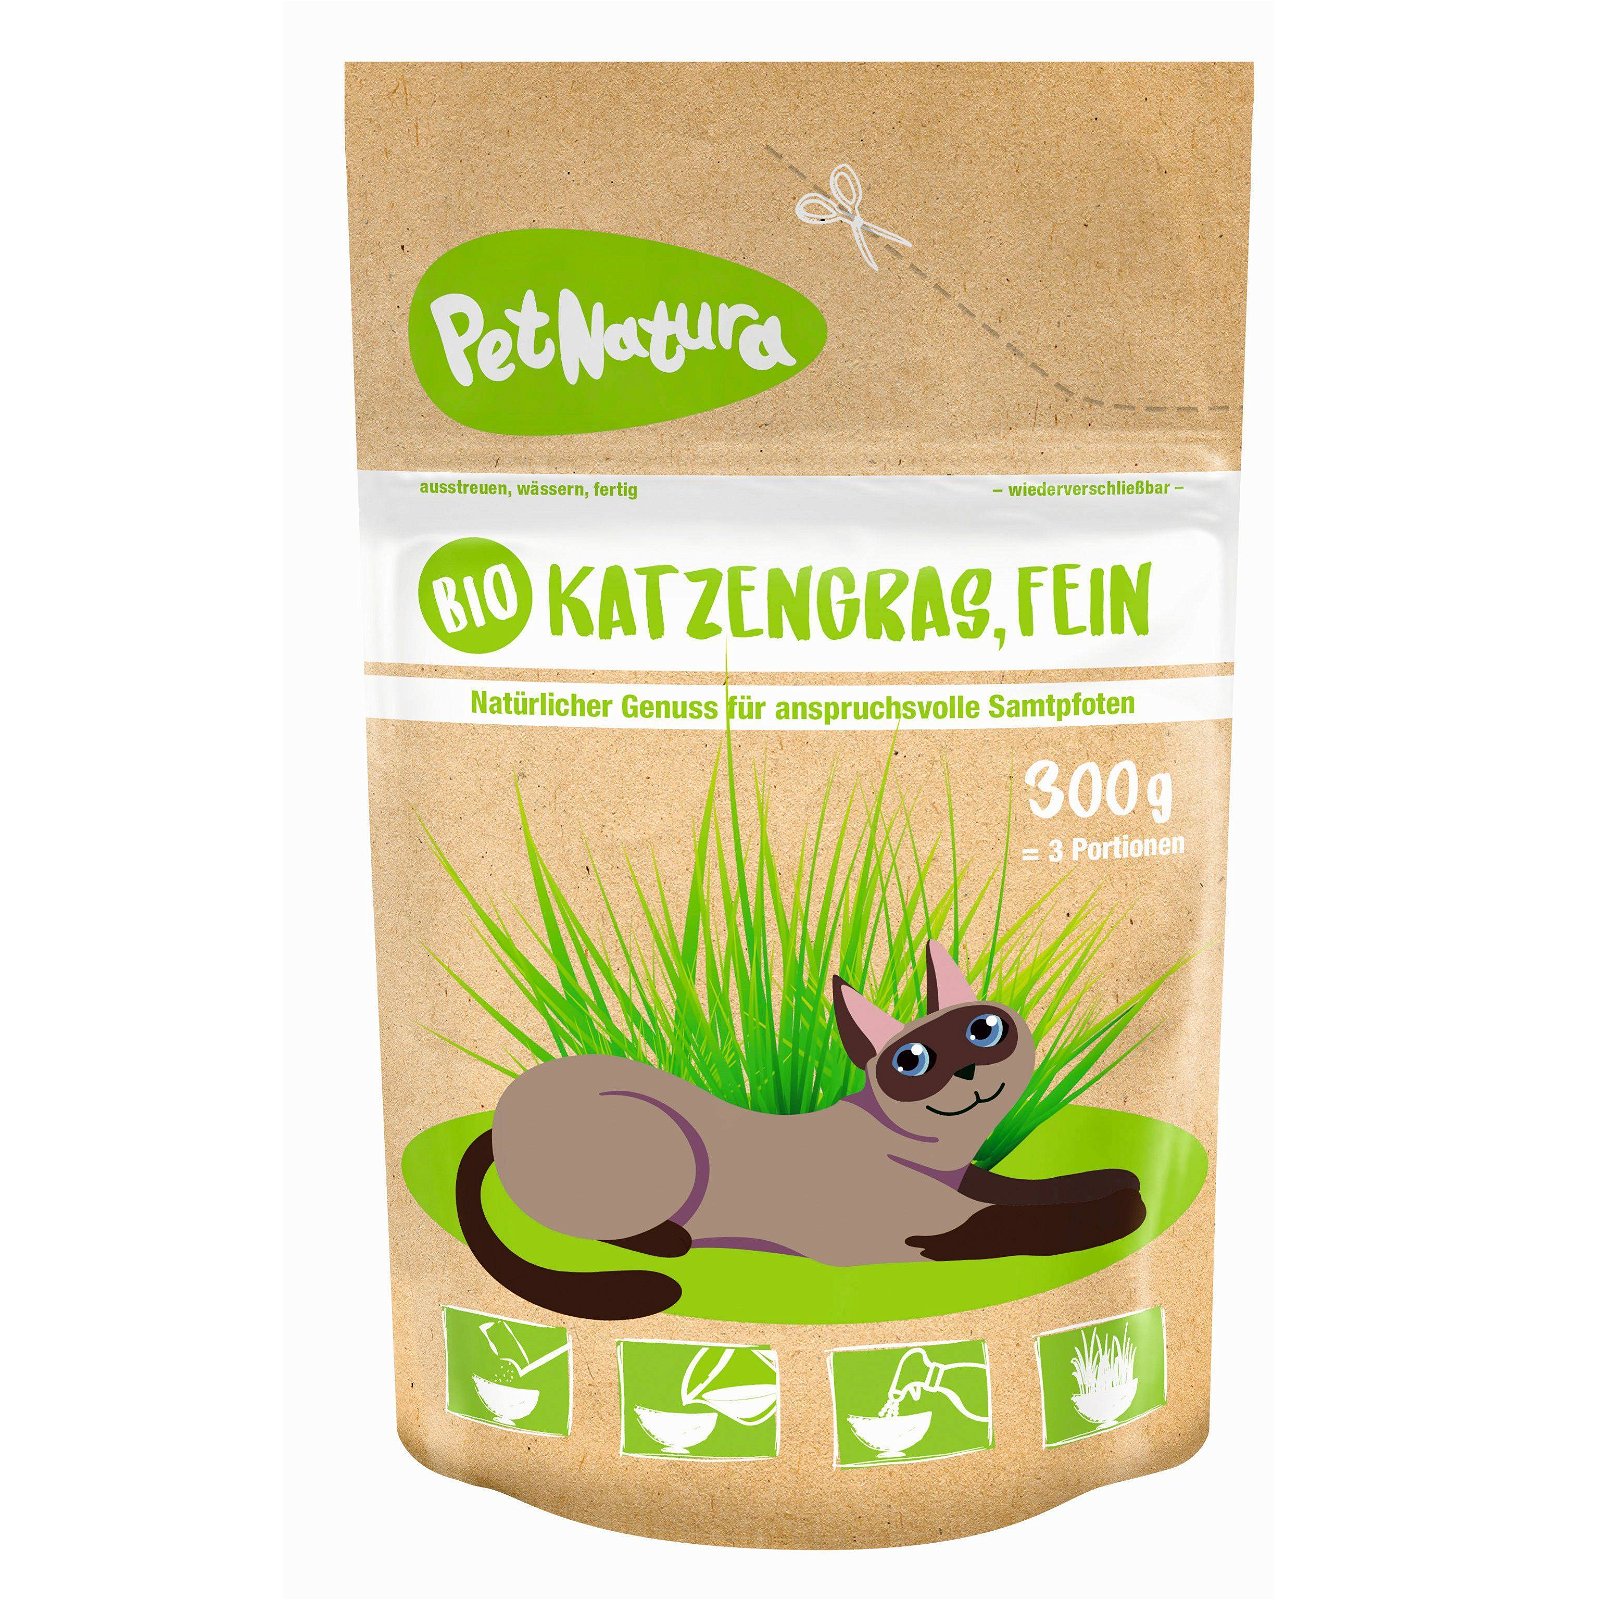 Bio-Katzengras fein, Saatgut, 0,3 kg